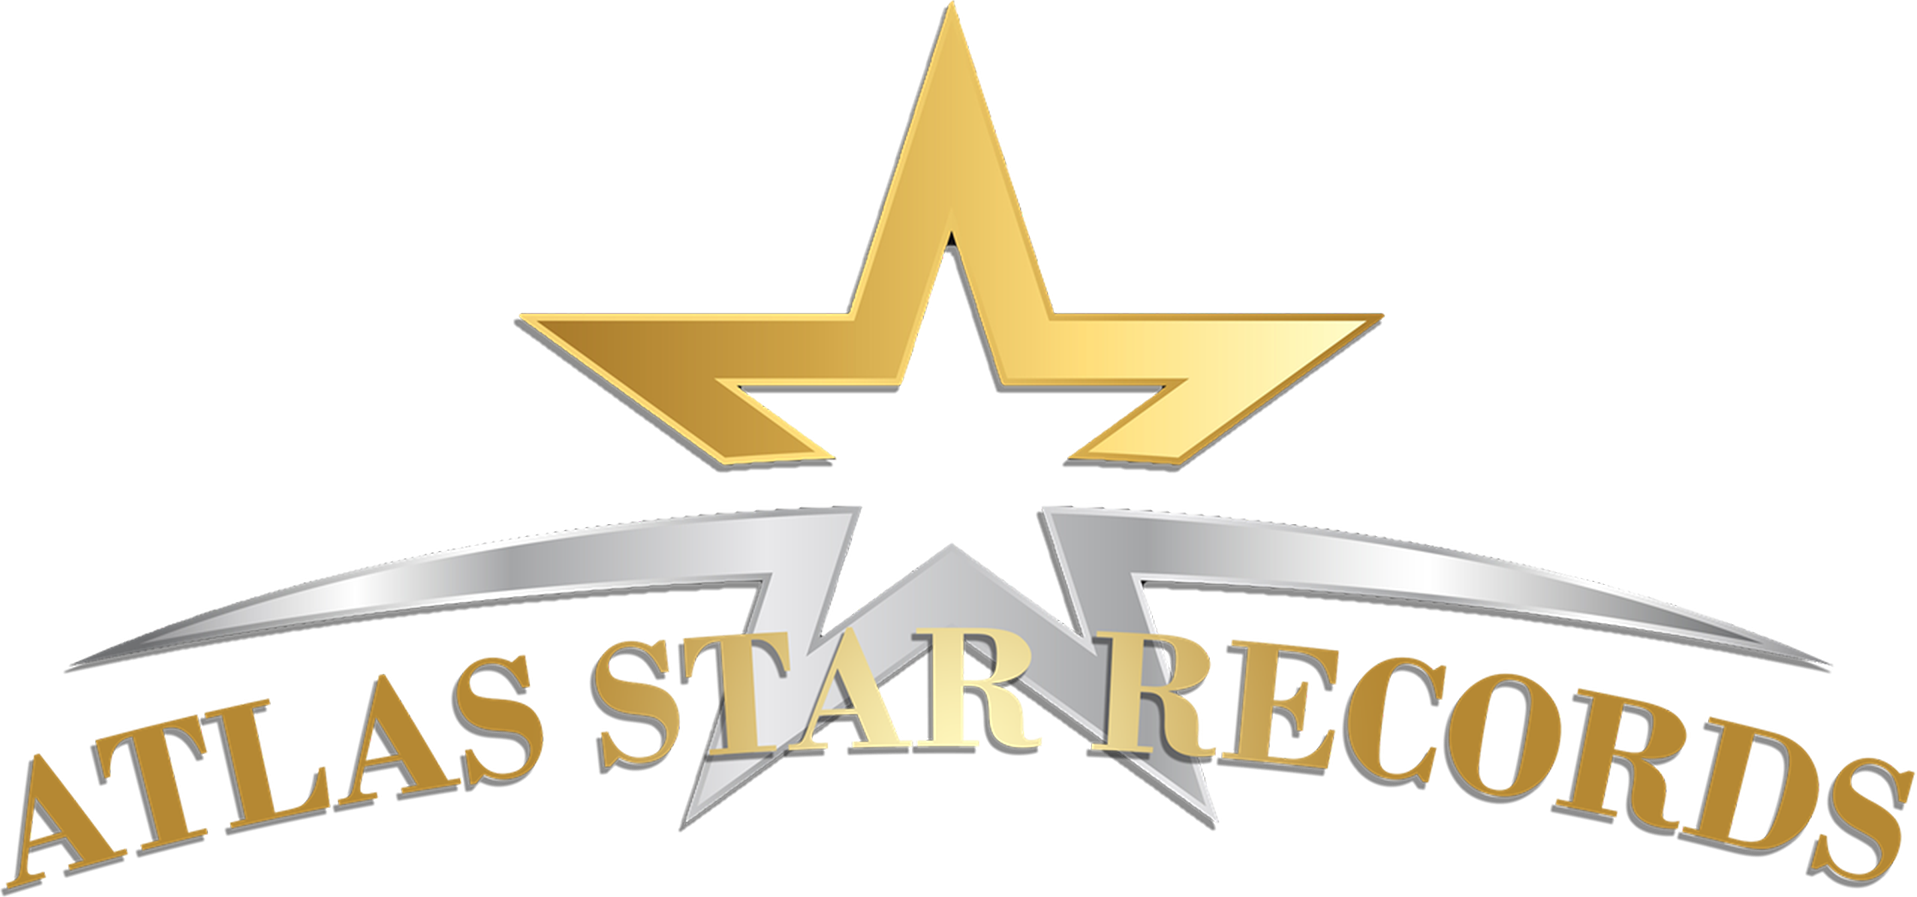 Atlas Star Records LLC Logo